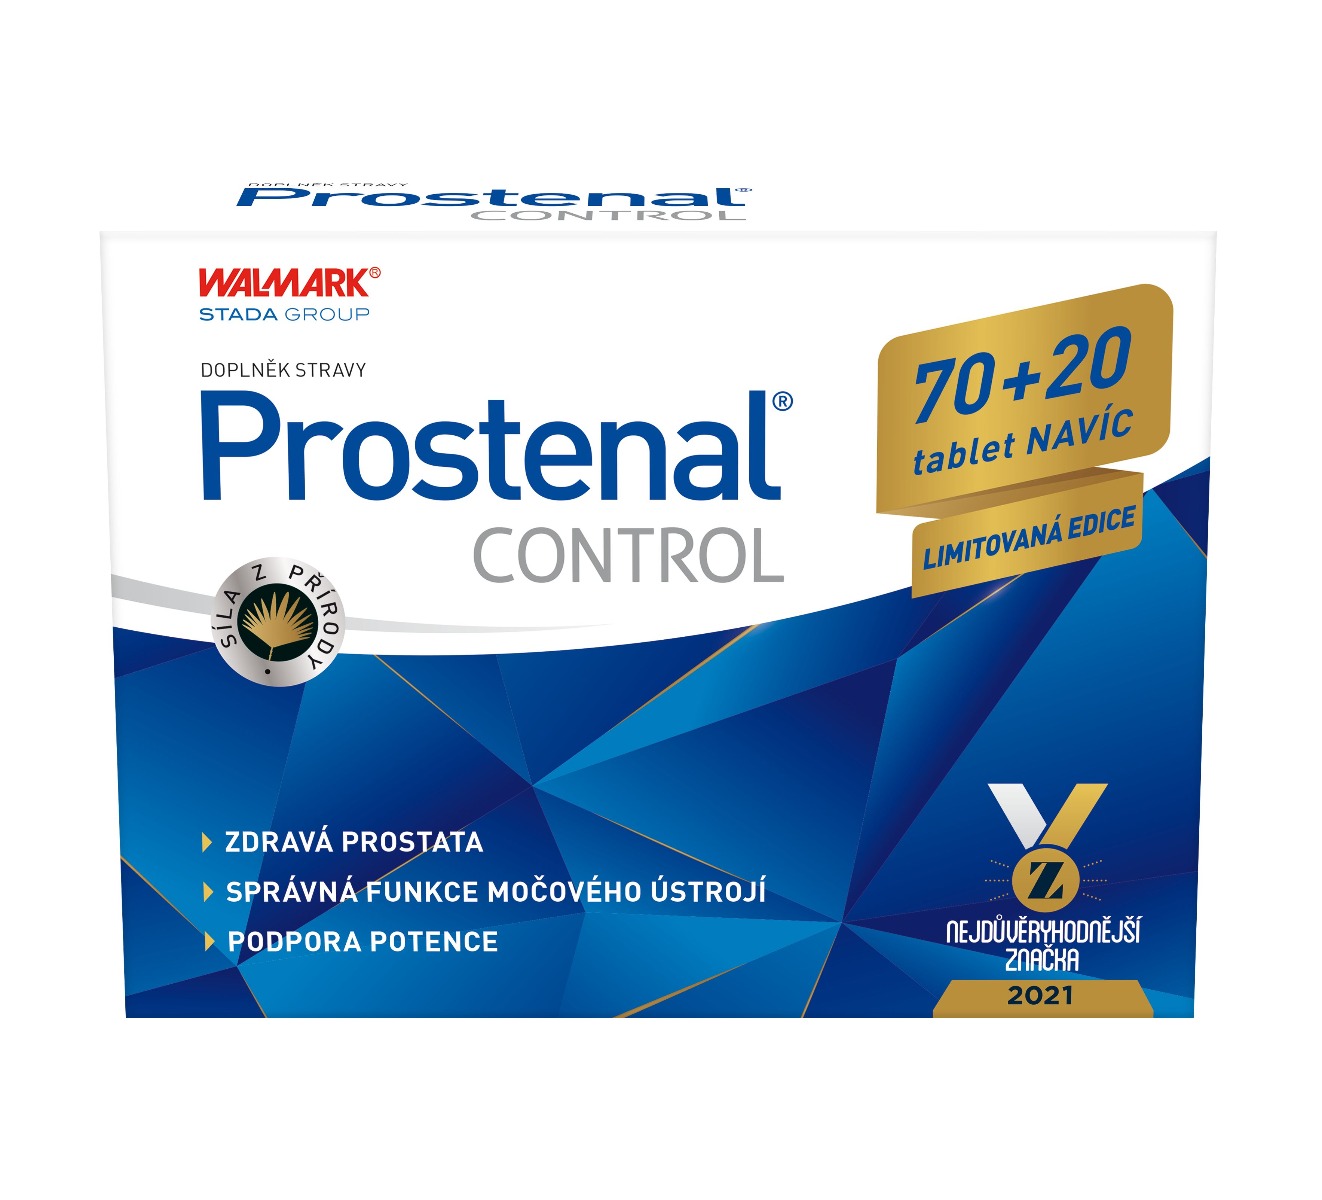 Prostenal Control 70+20 tablet navíc Prostenal